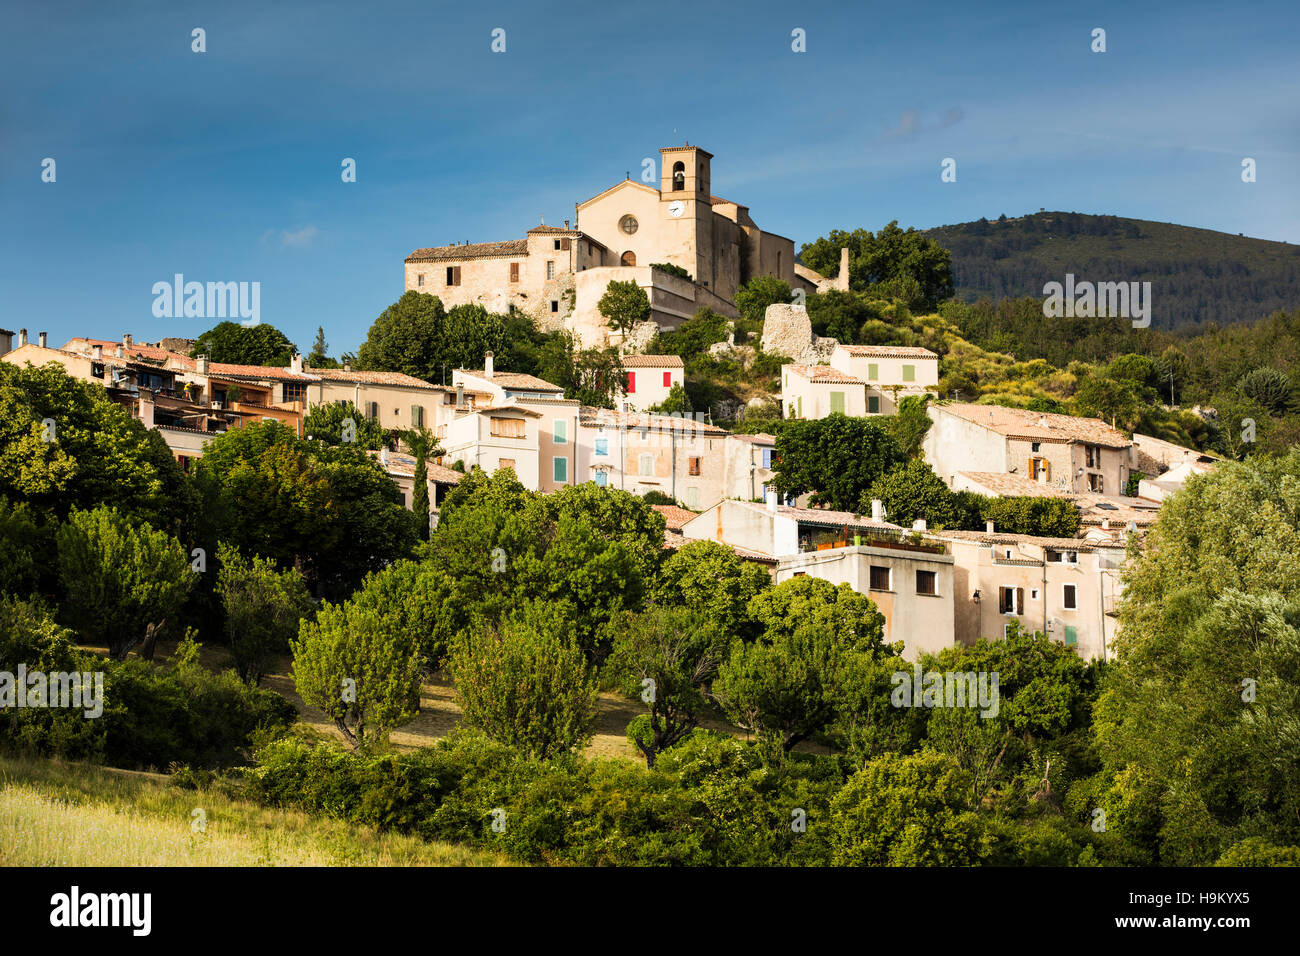 Saint Jurs, commune, Alpes-de-Haute-Provence, Provence-Alpes-Côte d'Azur, France Stock Photo